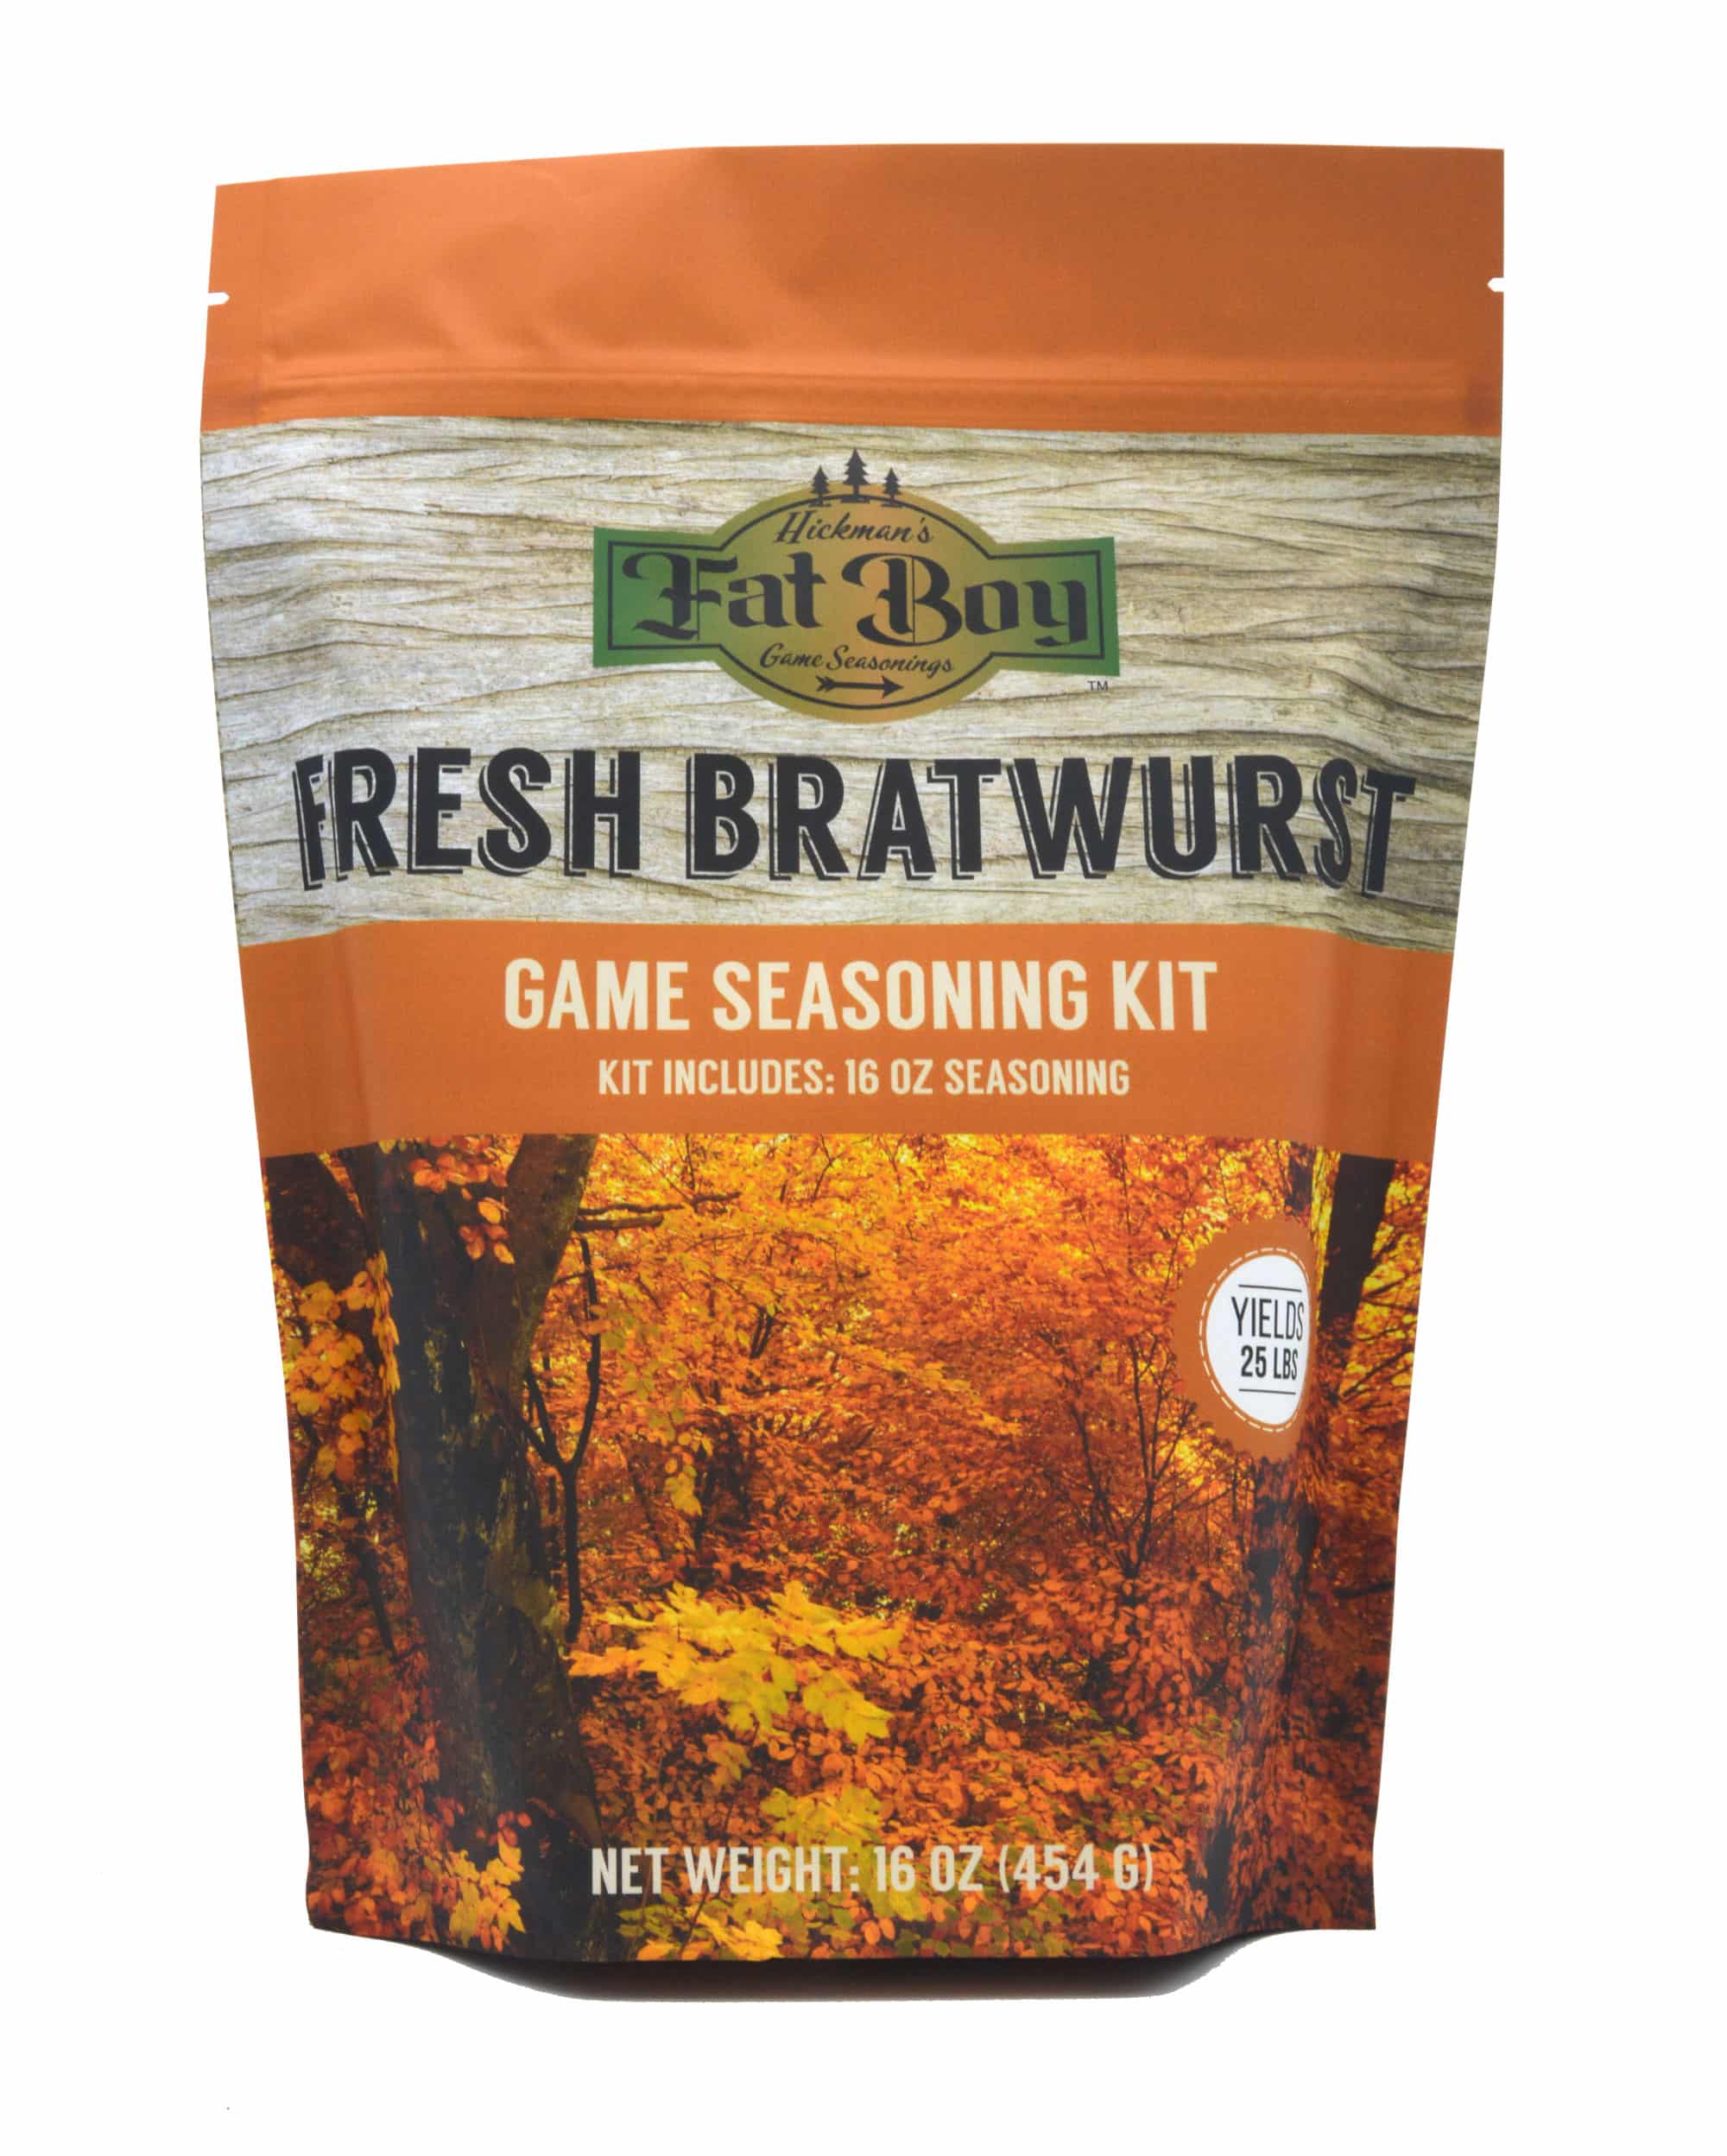 Bratwurst Game Seasoning Kit - Fat Boy Natural BBQ